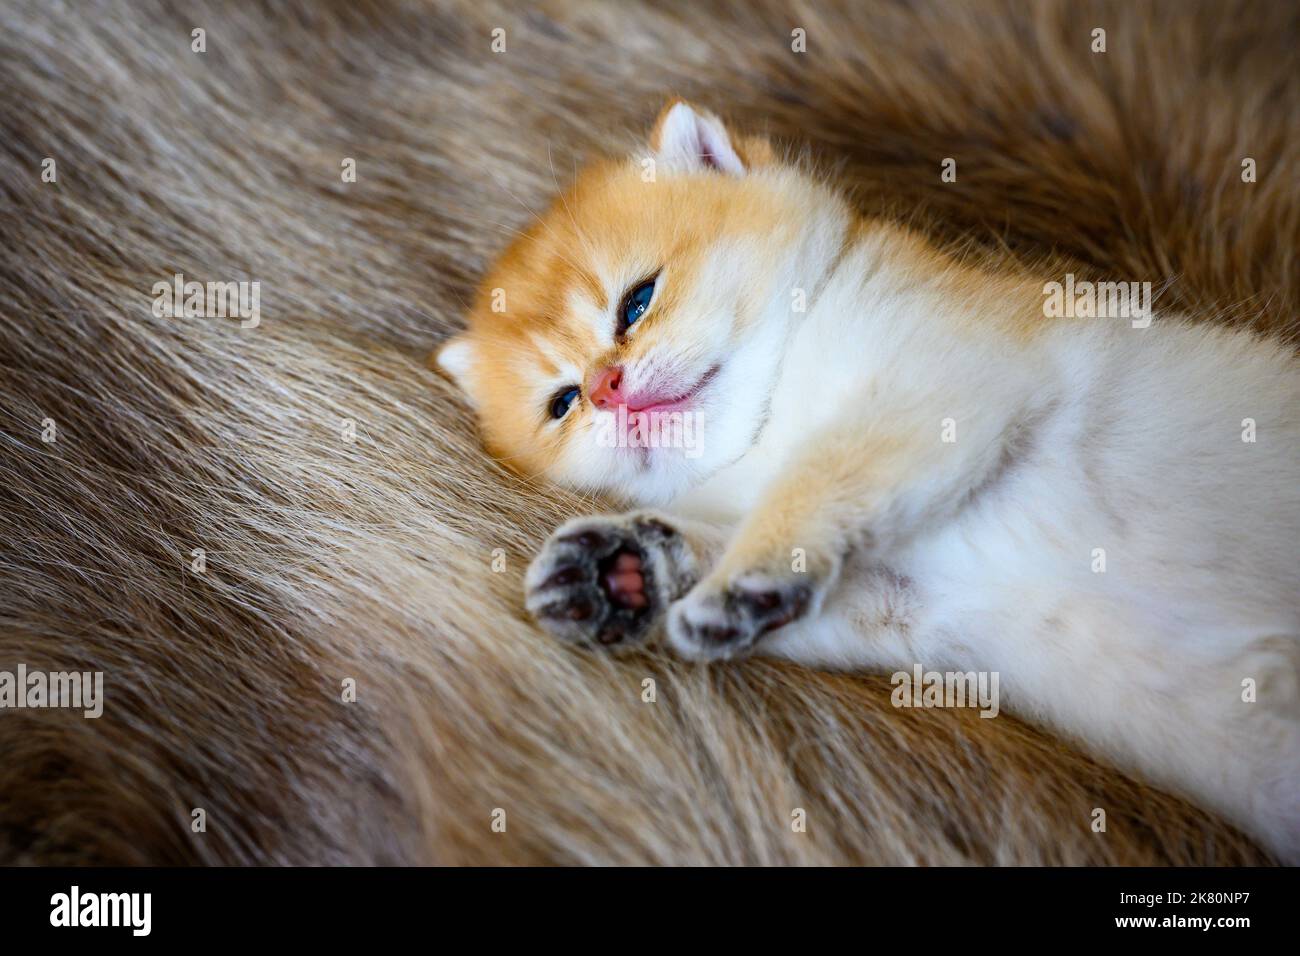 Piccolo gattino è sonnolento su un tappeto di pelliccia marrone, gatto Shorthair britannico dorato, puro pedigree. Bella e carina. Dormi bene sui tappeti soffici, top e. Foto Stock